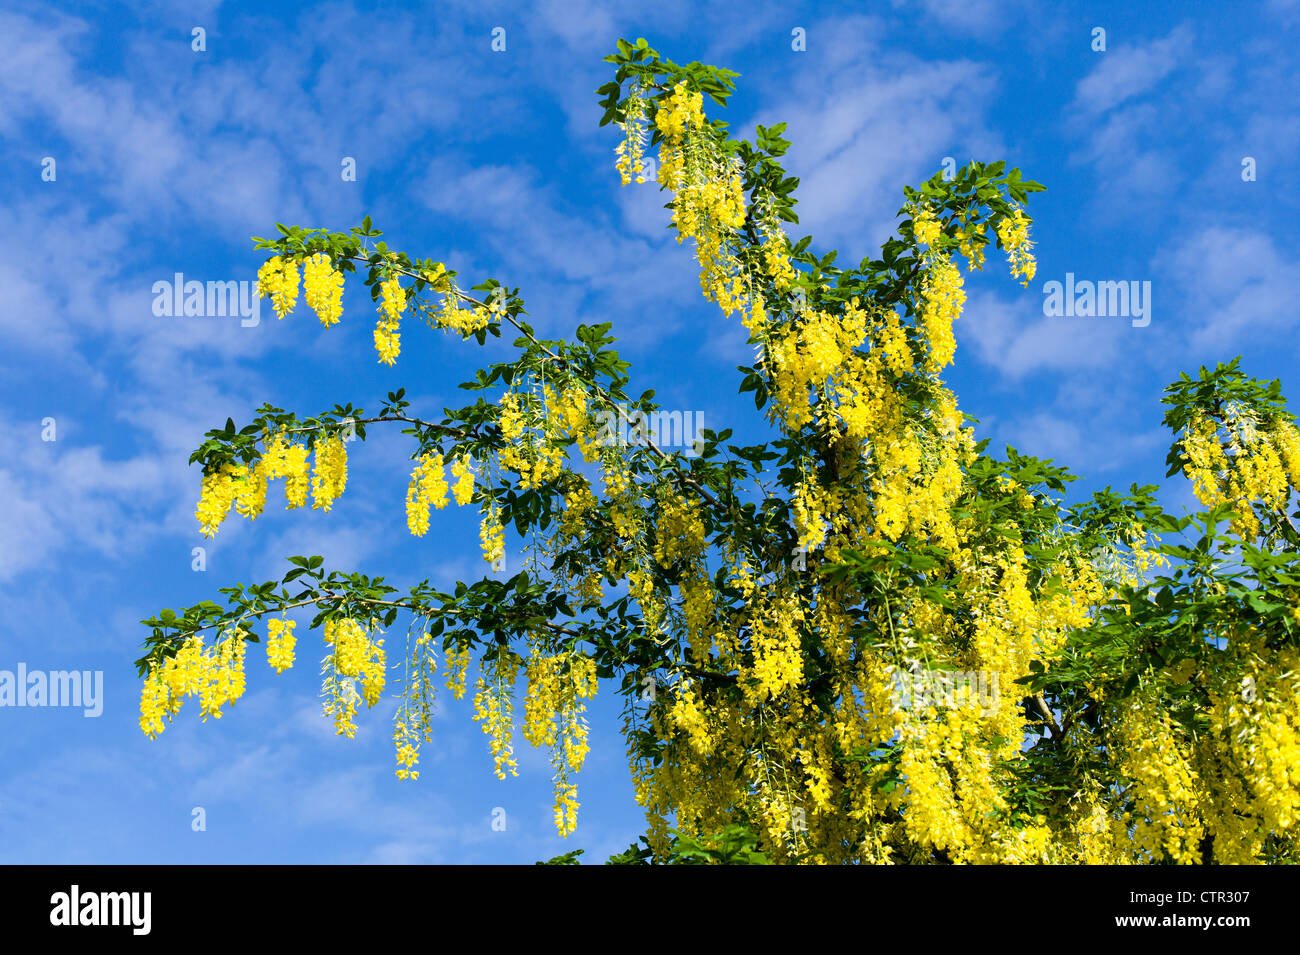 Goldregen X watereri Vossii Blüte im Juni vor einem gesprenkelten blauen Himmel Stockfoto